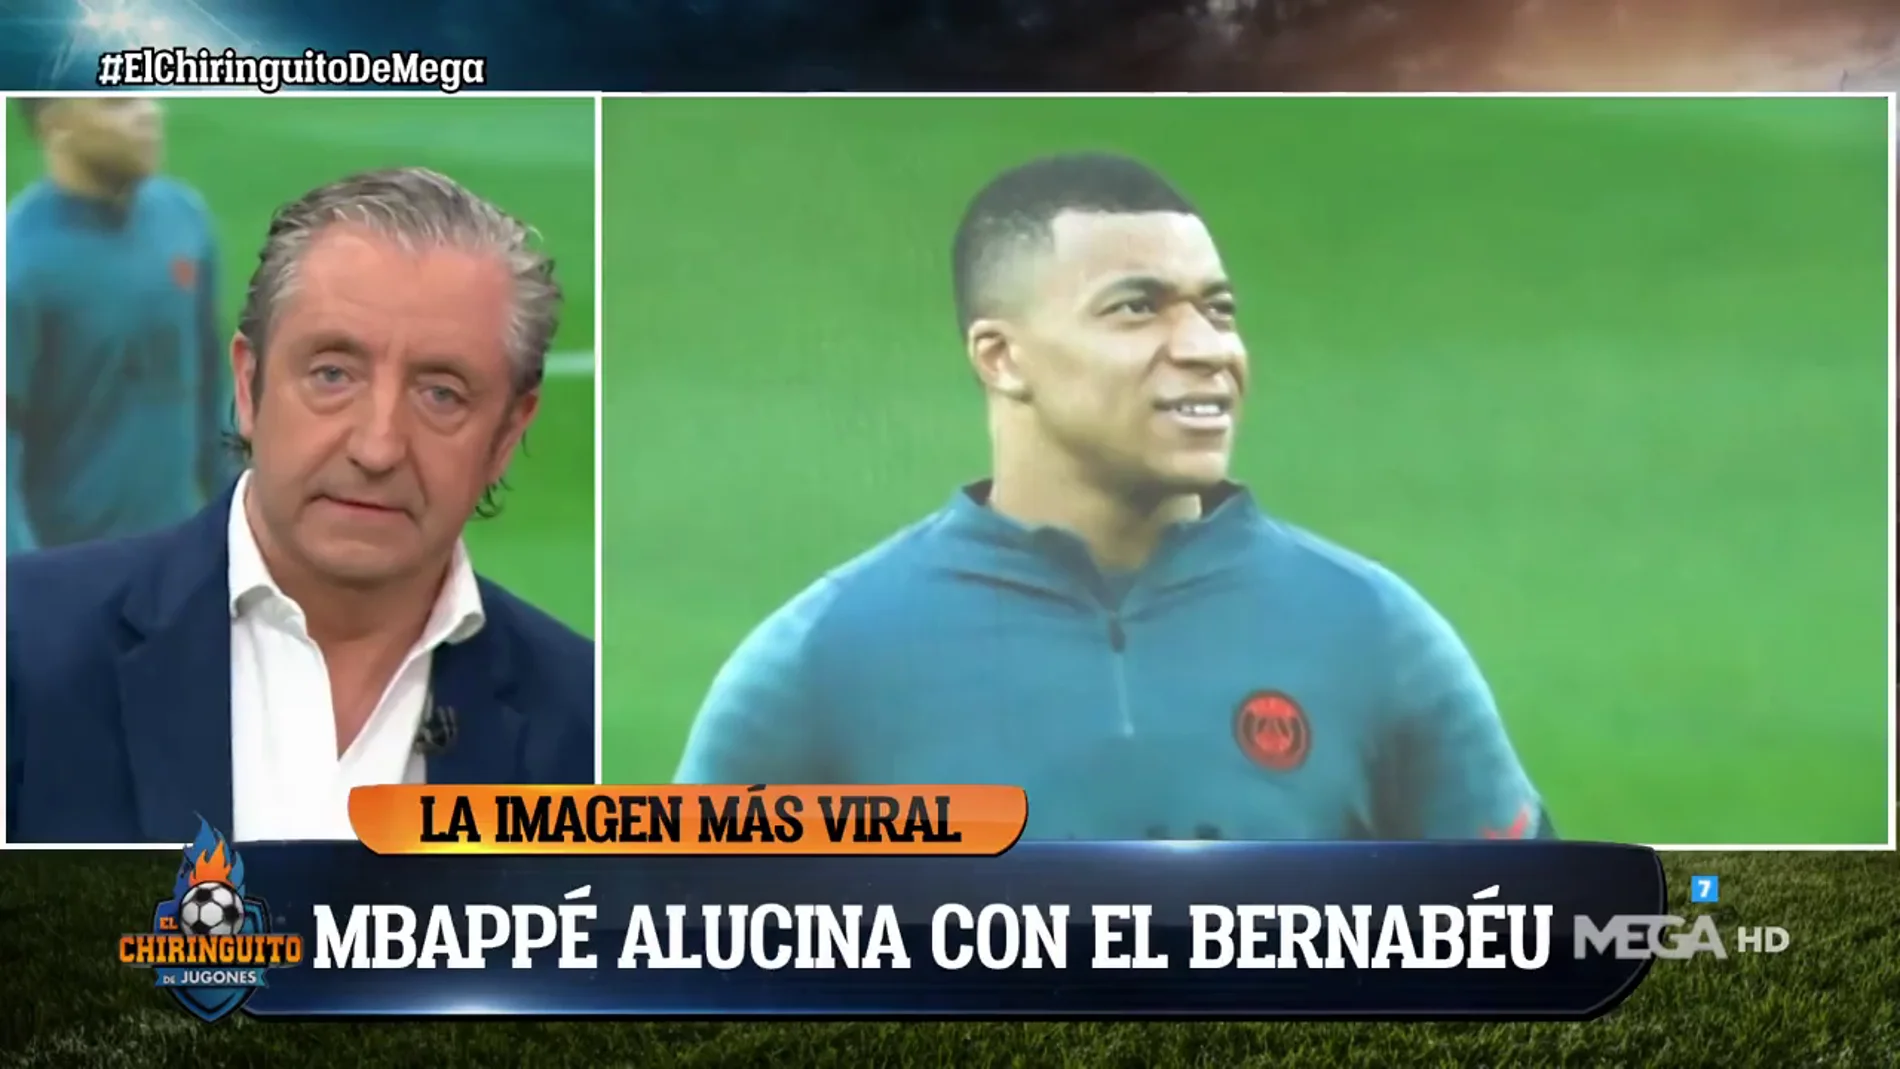 Josep Pedrerol: "Mbappé estará pensando ´Esto lo voy a llenar cuando me presenten´"